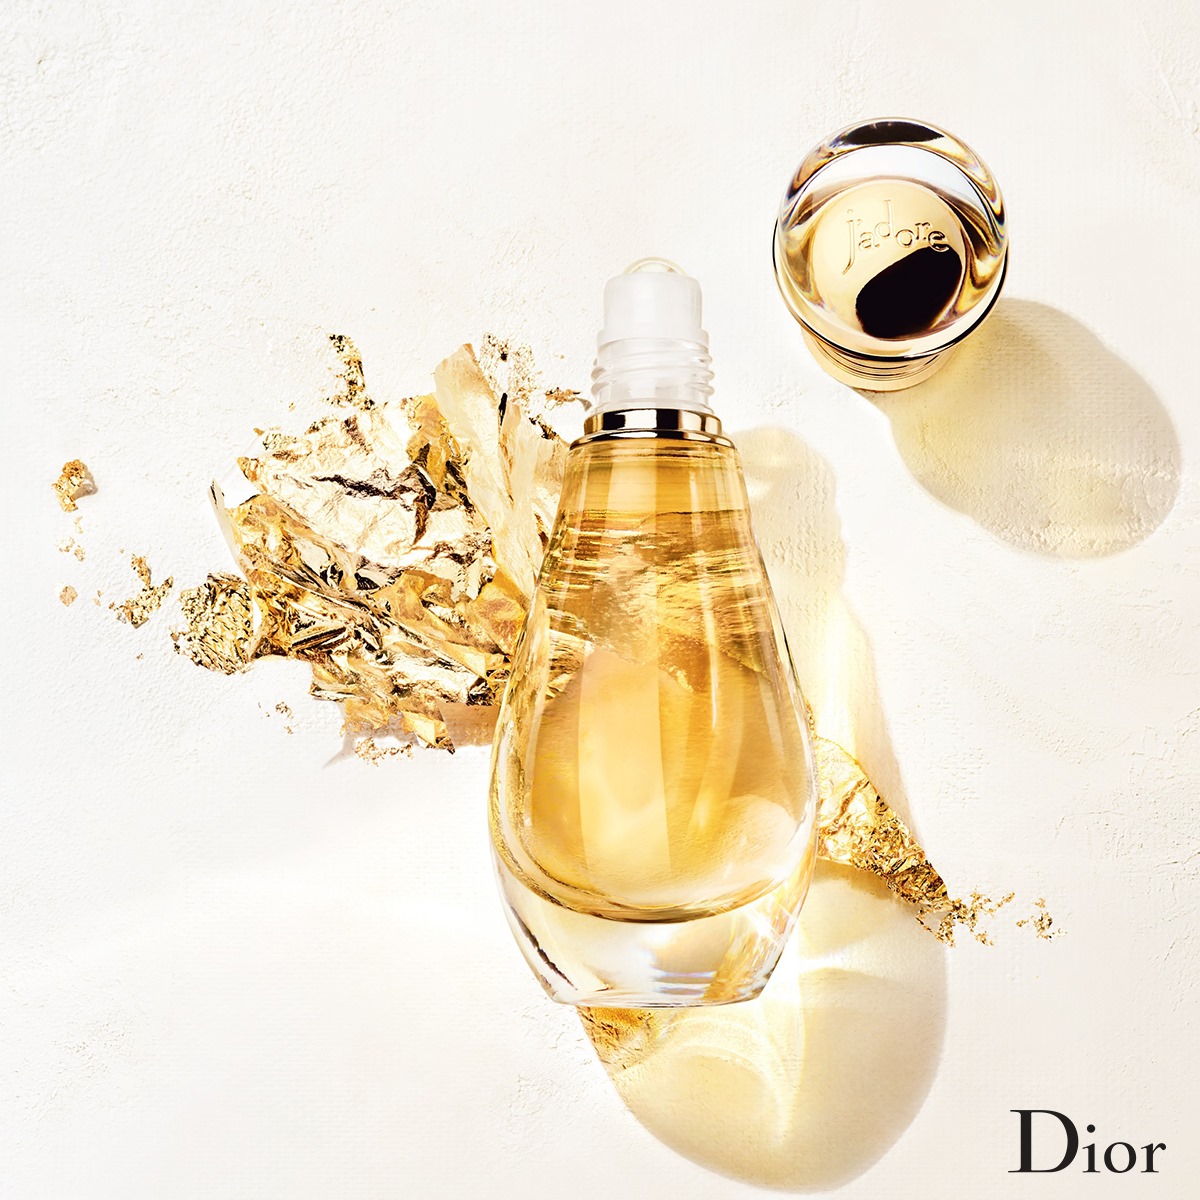 Dior J'Adore Eau De Parfum Roller Pearl 20ml น้ำหอมหัวลูกกลิ้ง กลิ่นหรูหราที่สะท้อนความเป็นสาวสังคมที่มีลุคมาดมั่น ด้วยกลิ่นหอมของมวลดอกไม้และฟรุ้ตตี้ ให้ความรู้สึกสดชื่น มีเสน่ห์